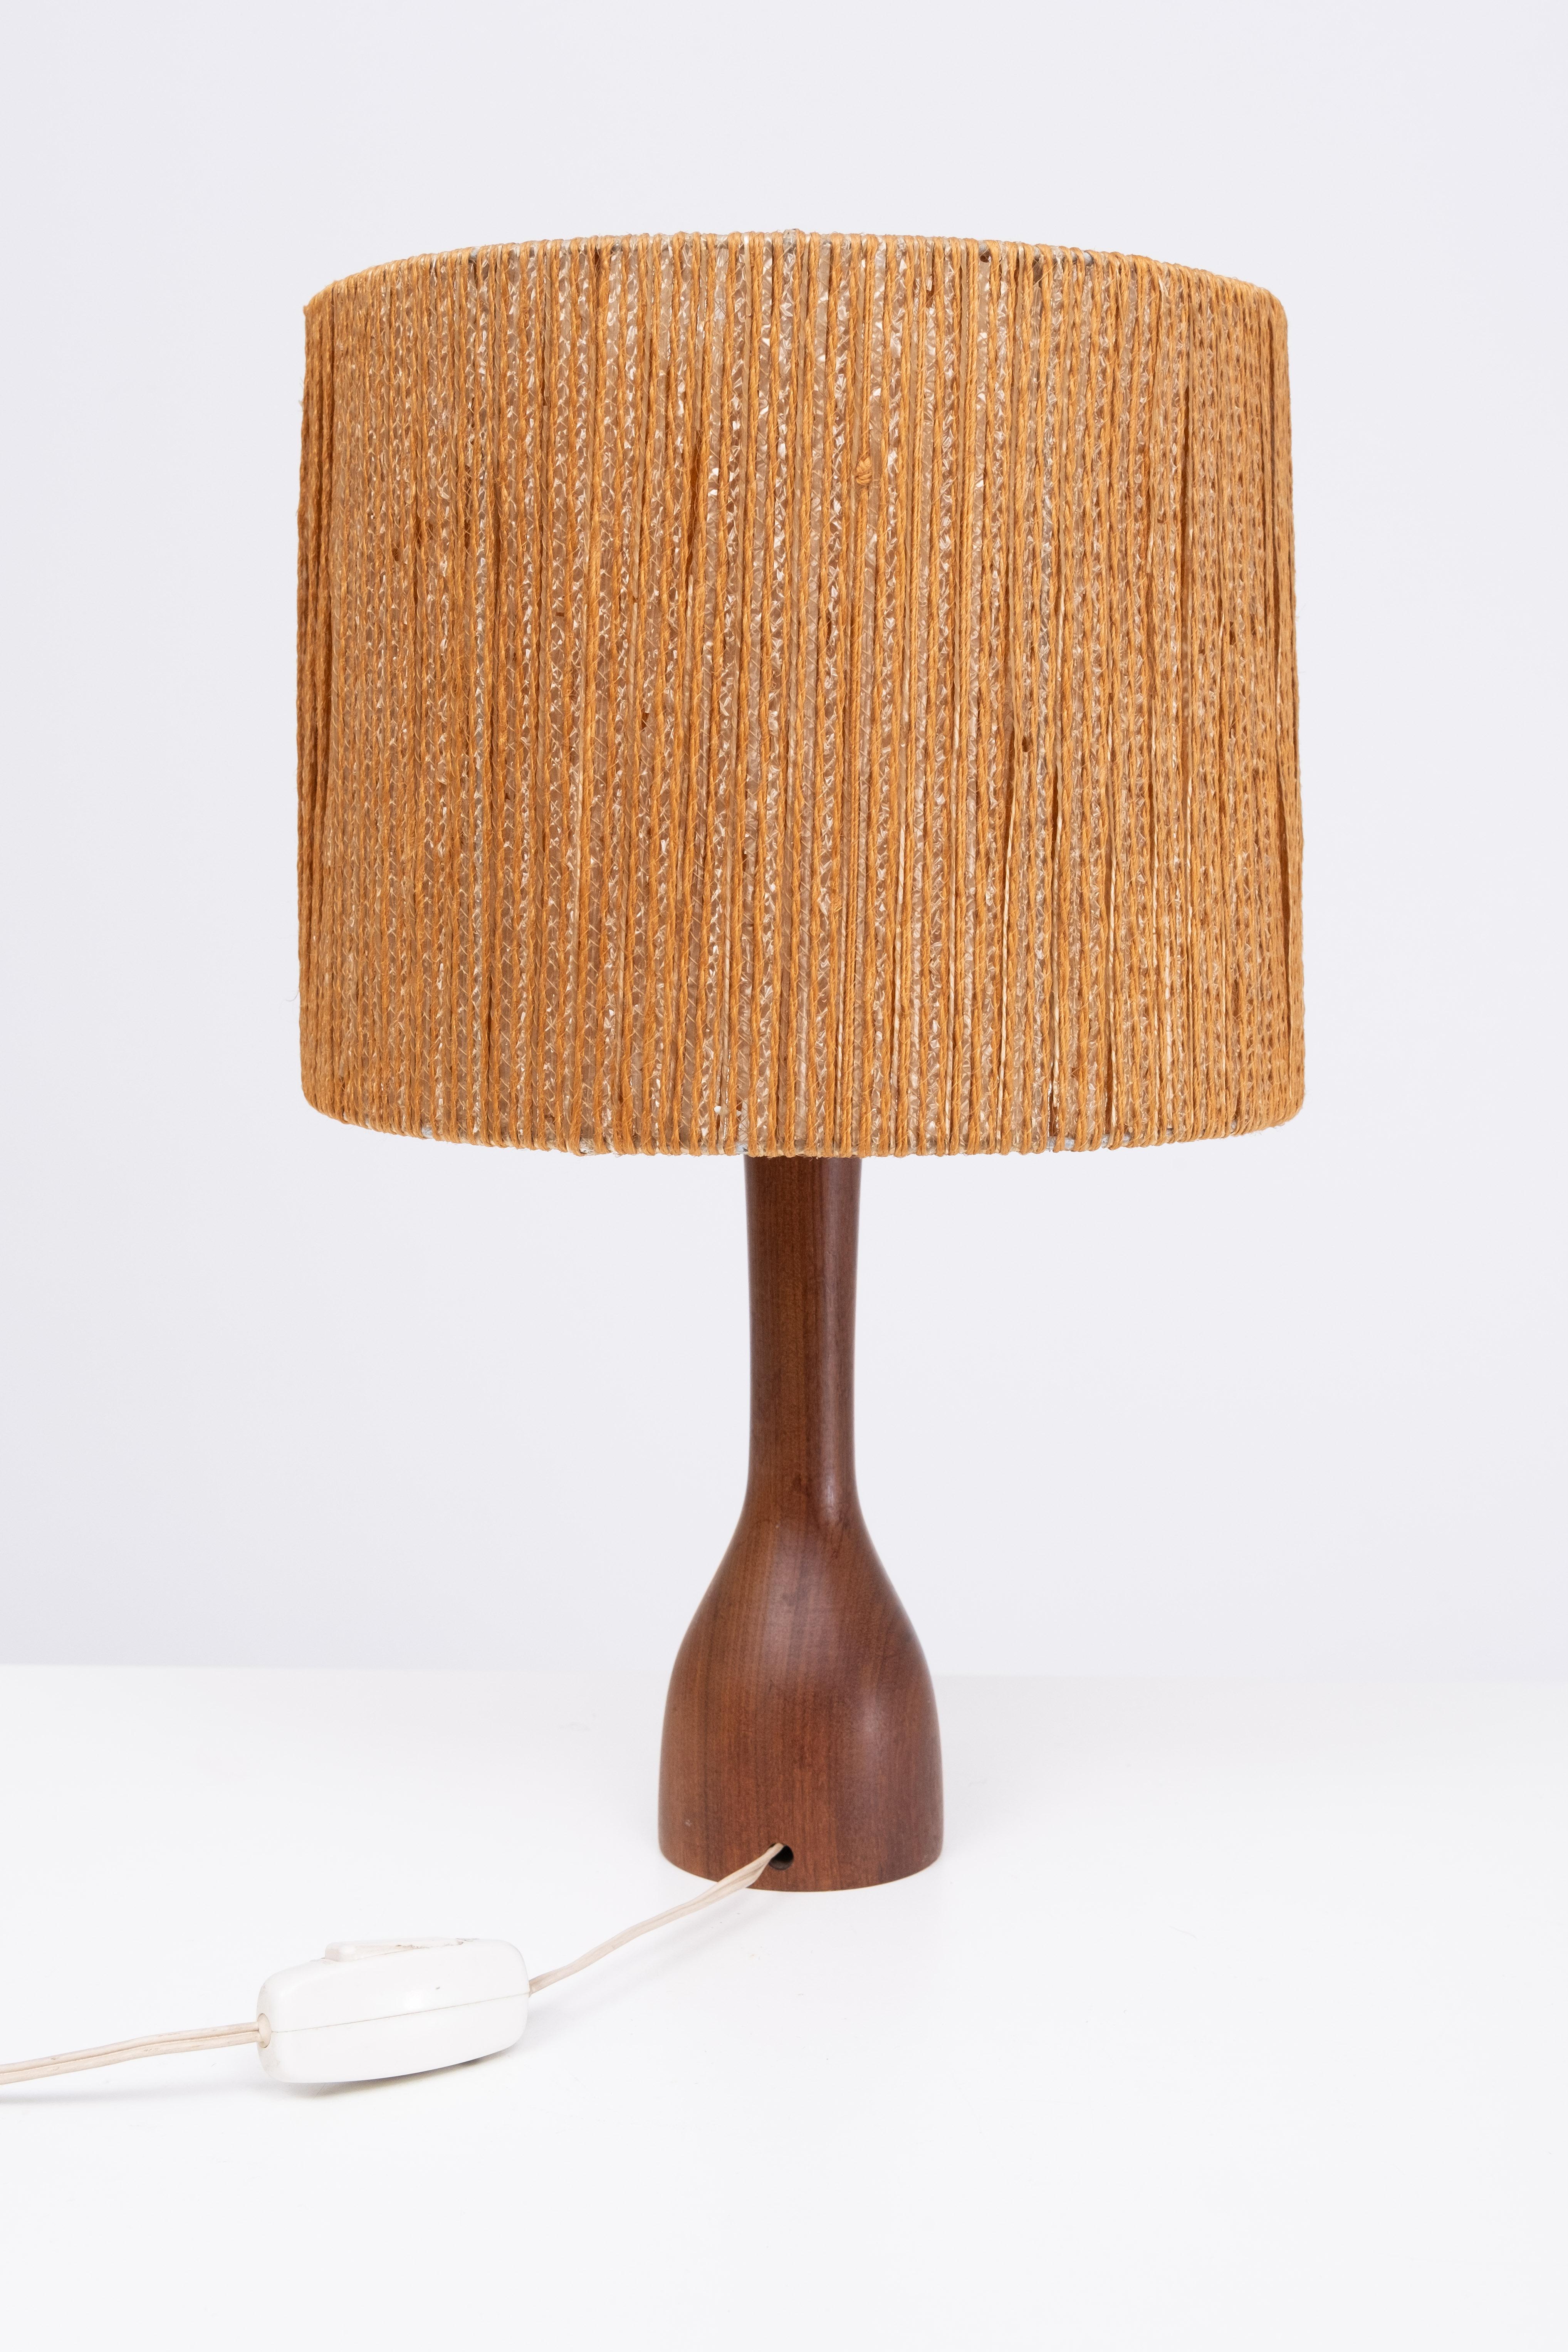 Danish Teak Table lamp Rope shade Denmark 1960  For Sale